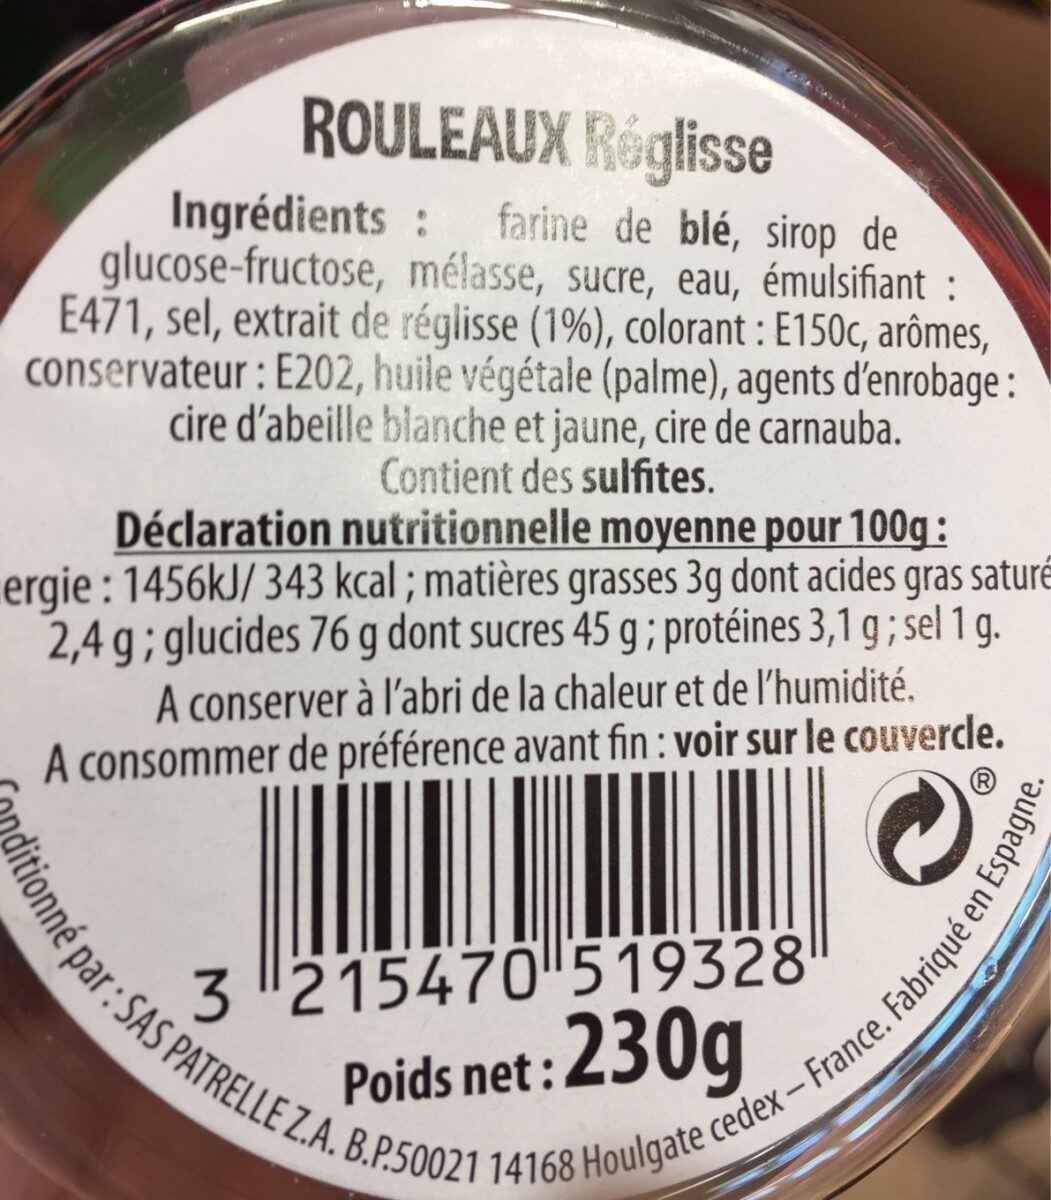 Rouleau reglisse - Tableau nutritionnel